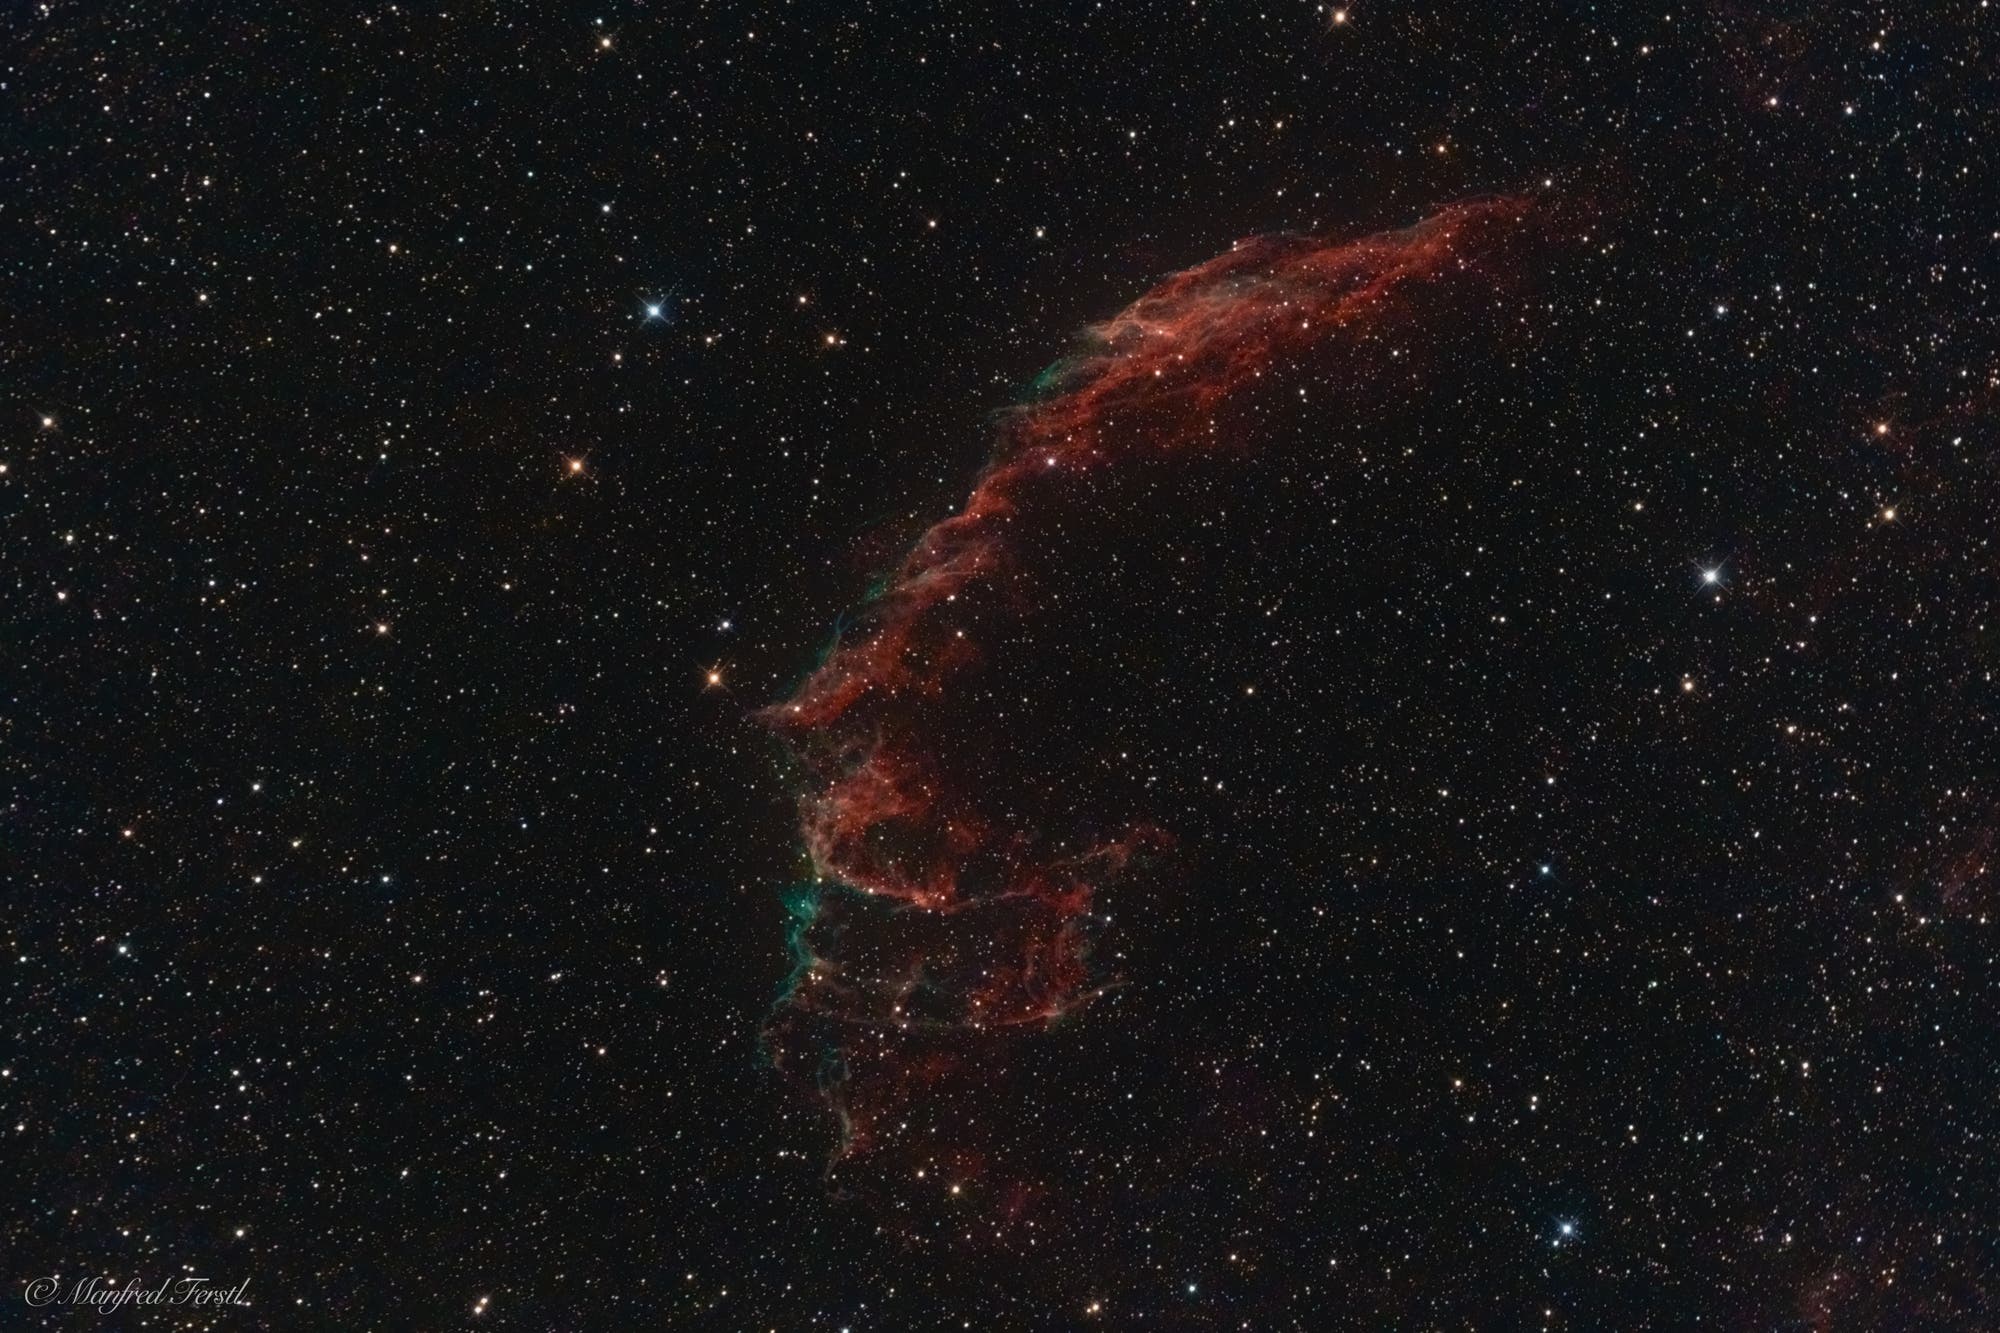 NGC 6995